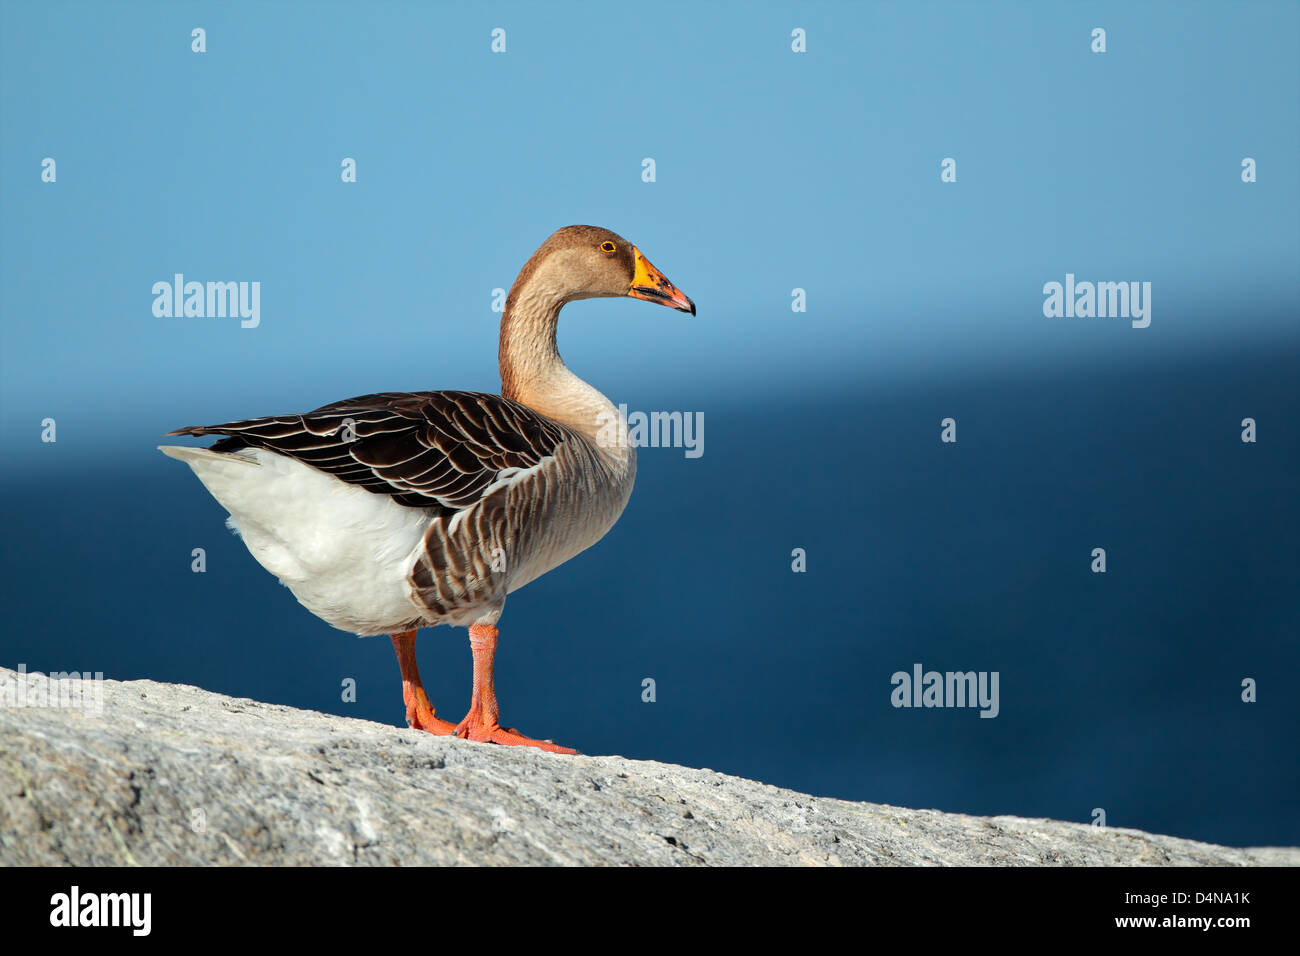 Addomesticazione graylag goose (Anser anser) contro uno sfondo di colore blu acqua e cielo Foto Stock